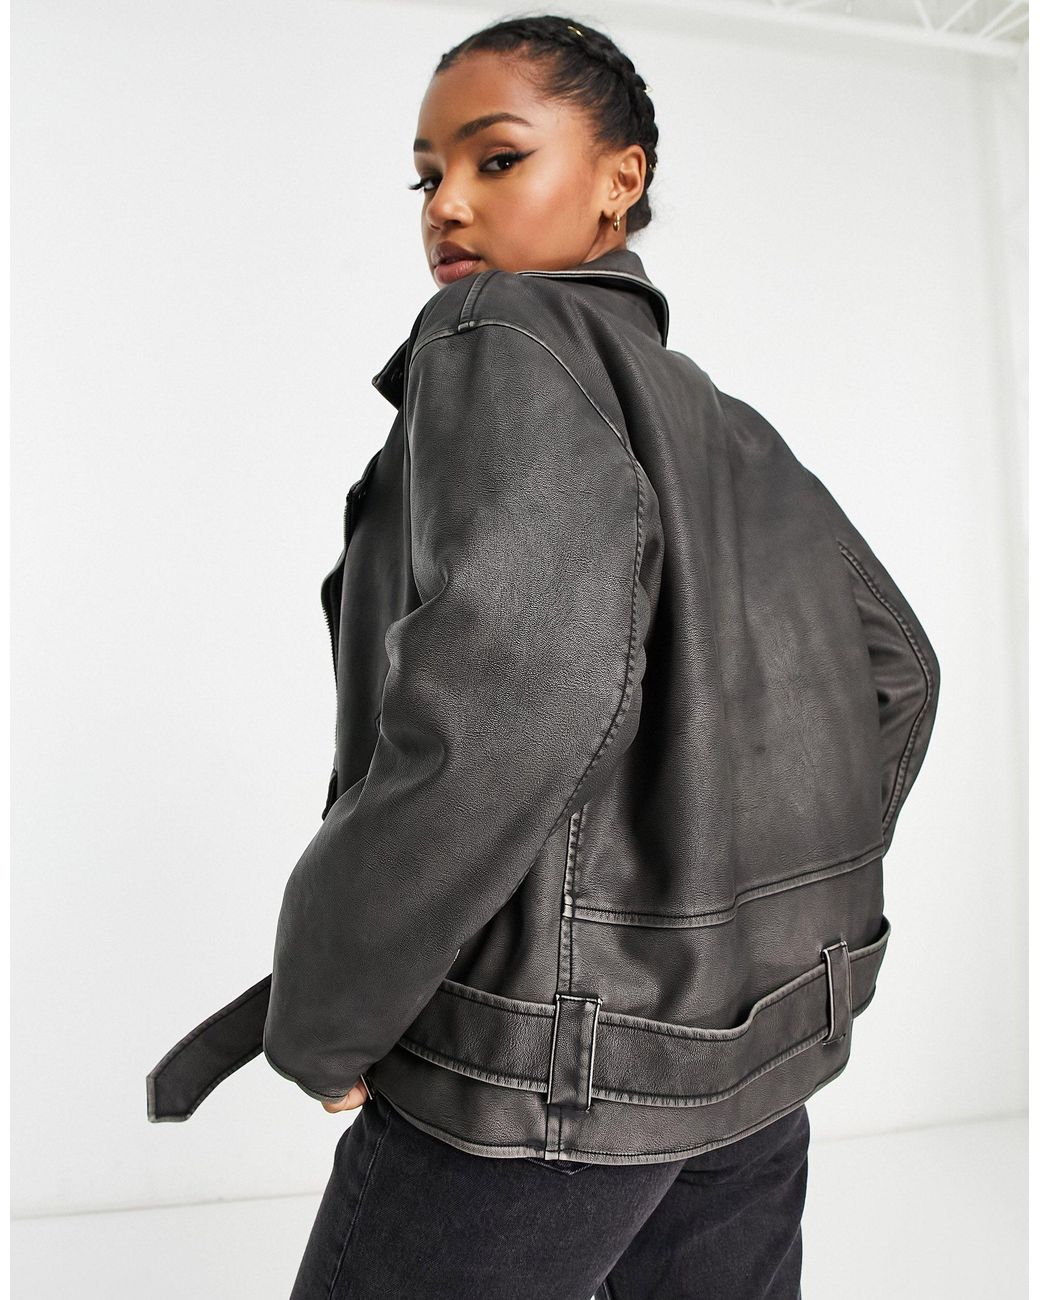 Miss Selfridge faux leather biker jacket in black